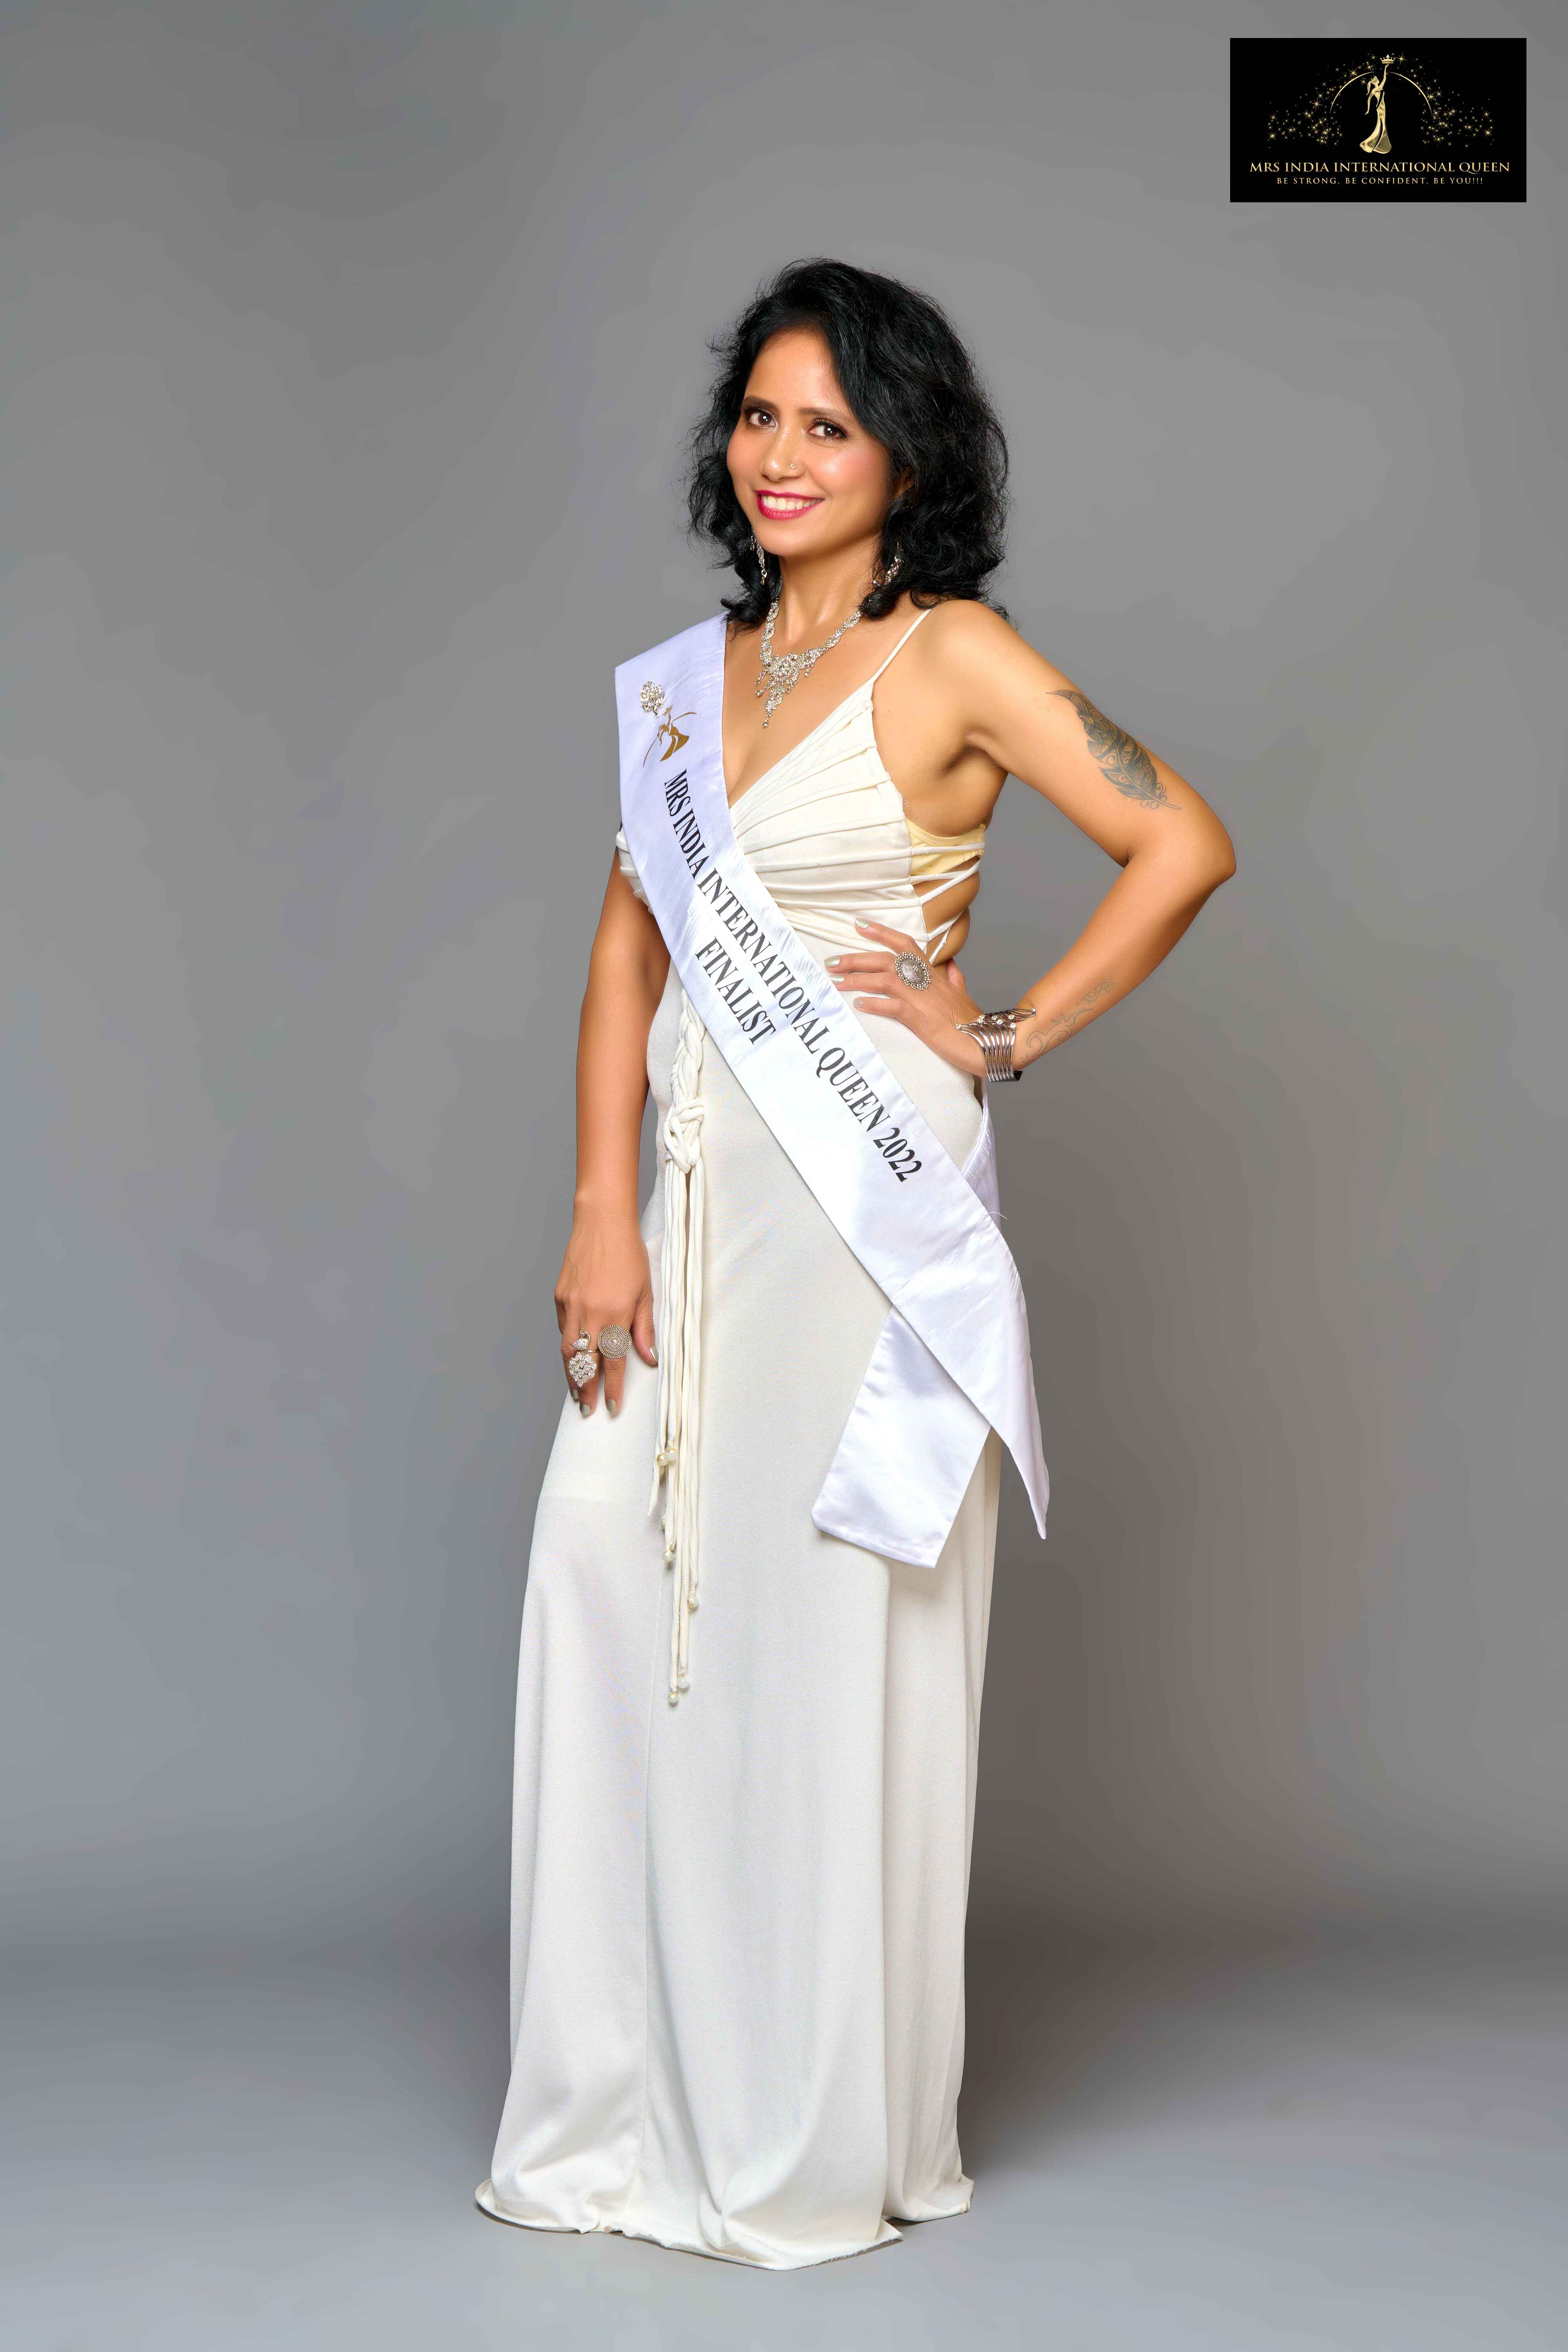 White Wear 2022 - Mrs India International Queen